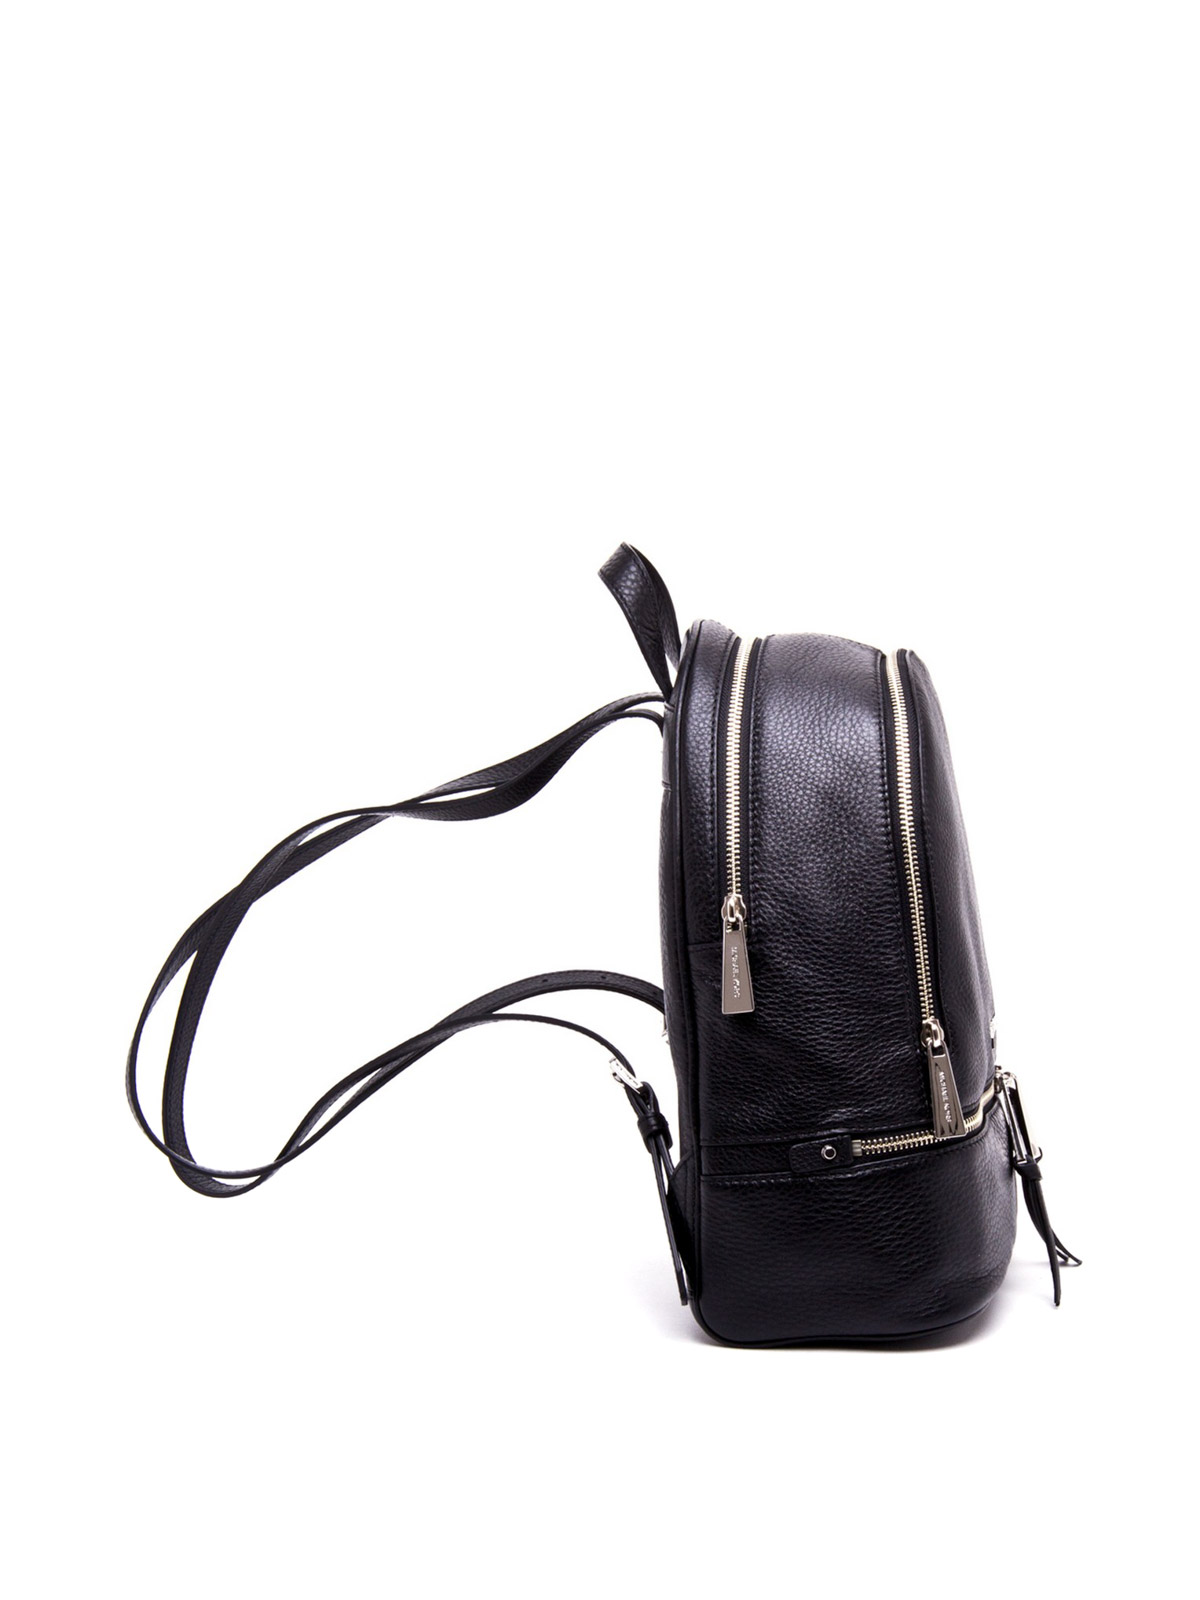 MICHAEL KORS Rhea Zip Backpack Black Color  Black backpack, Black leather  backpack, Michael kors rhea backpack